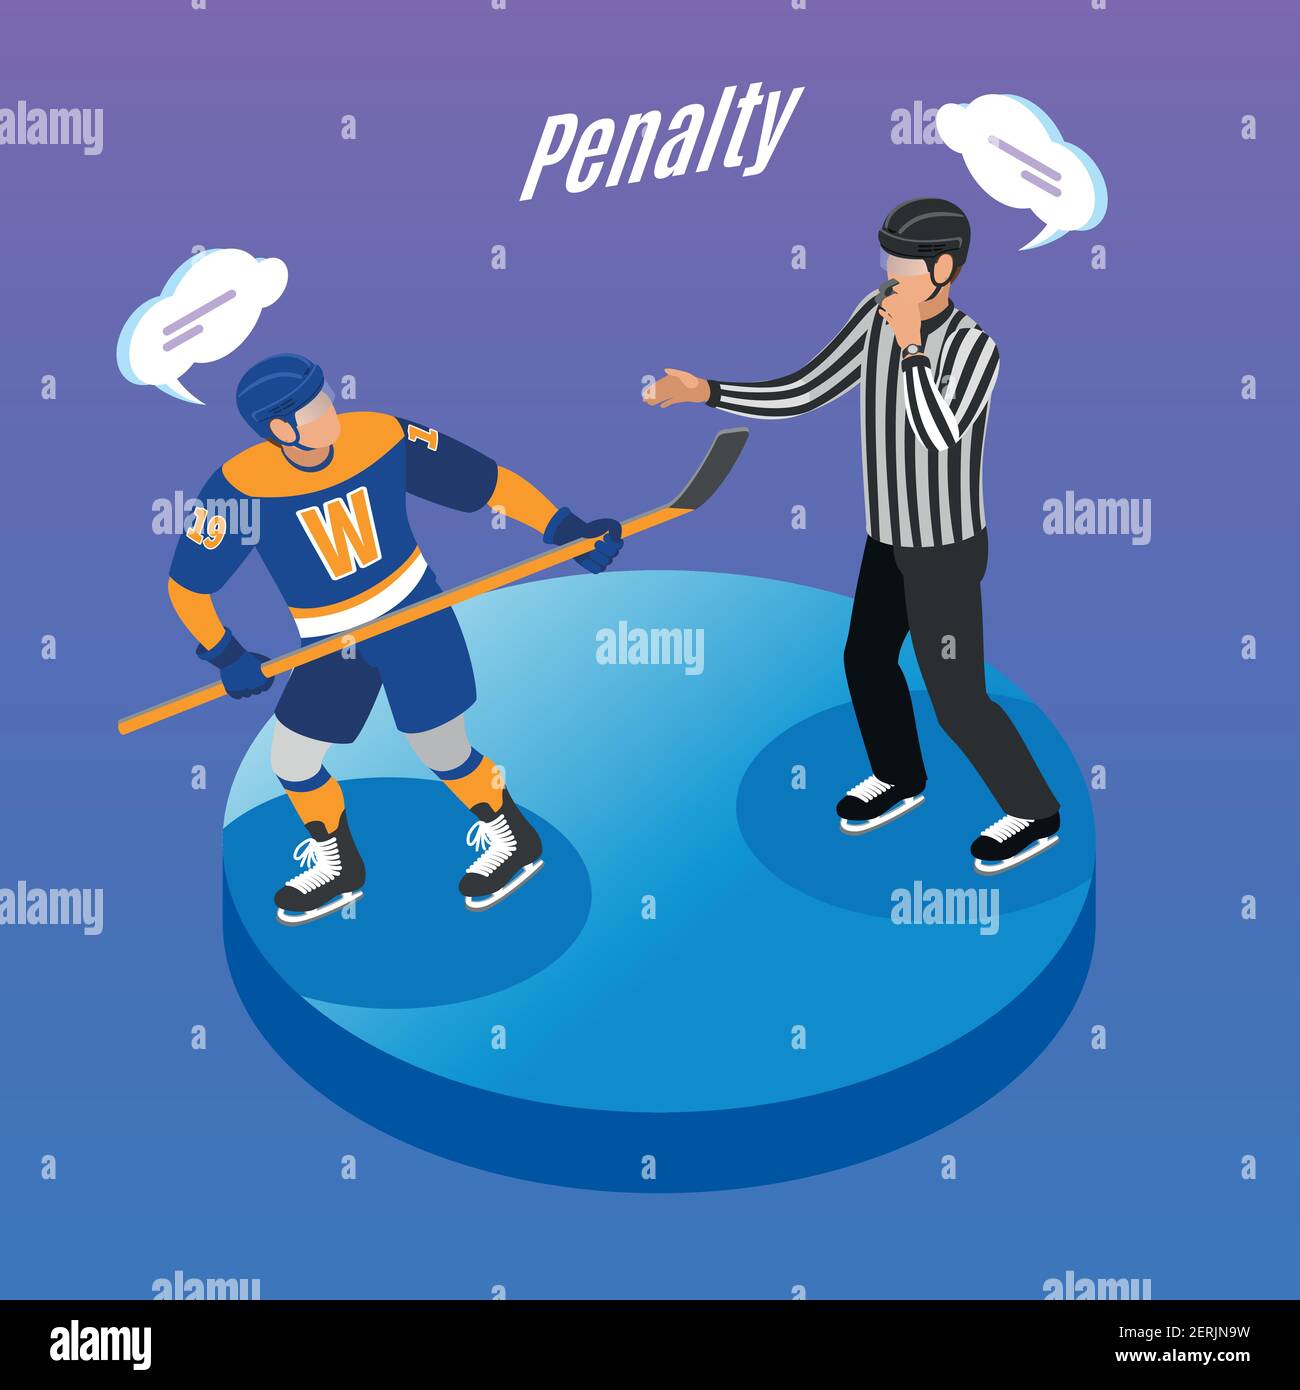 Hockey Referee Wall Art the Penalty Box Hockey Decal Boys 